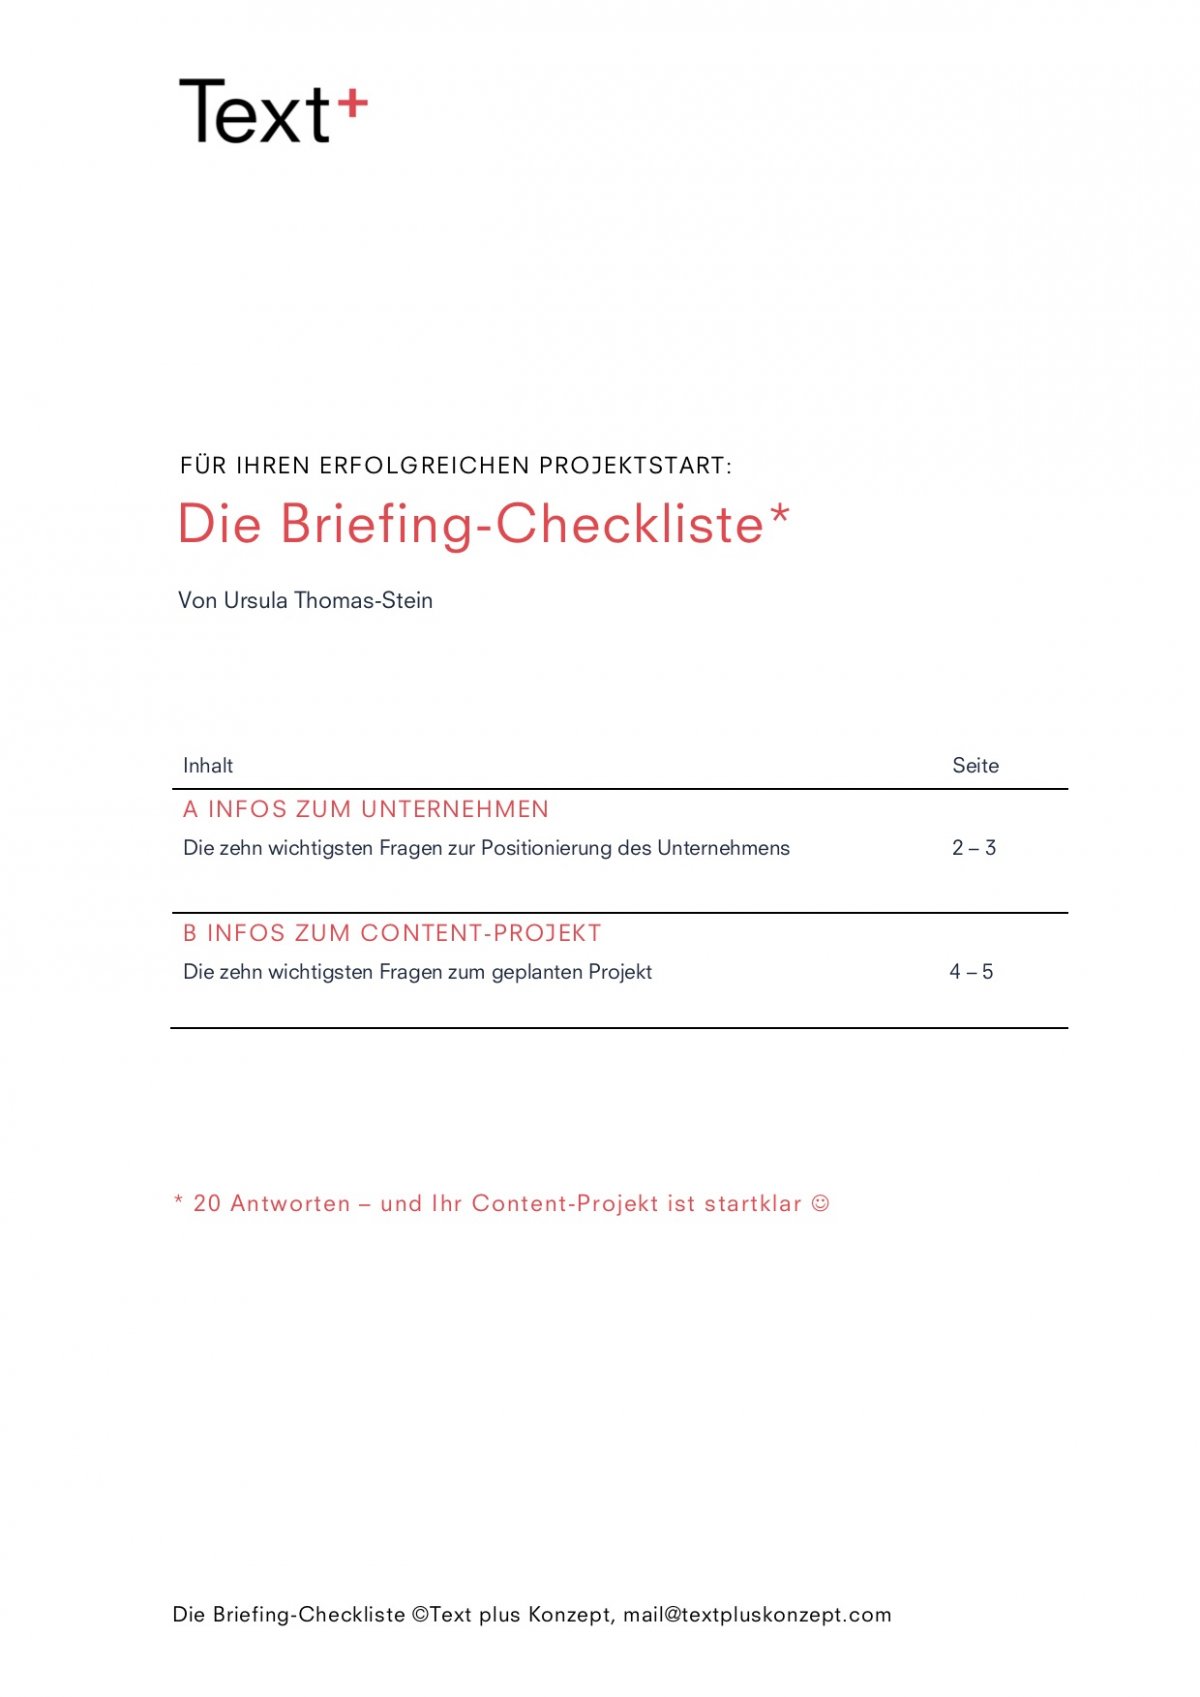 Inhalt der Briefing-Checkliste